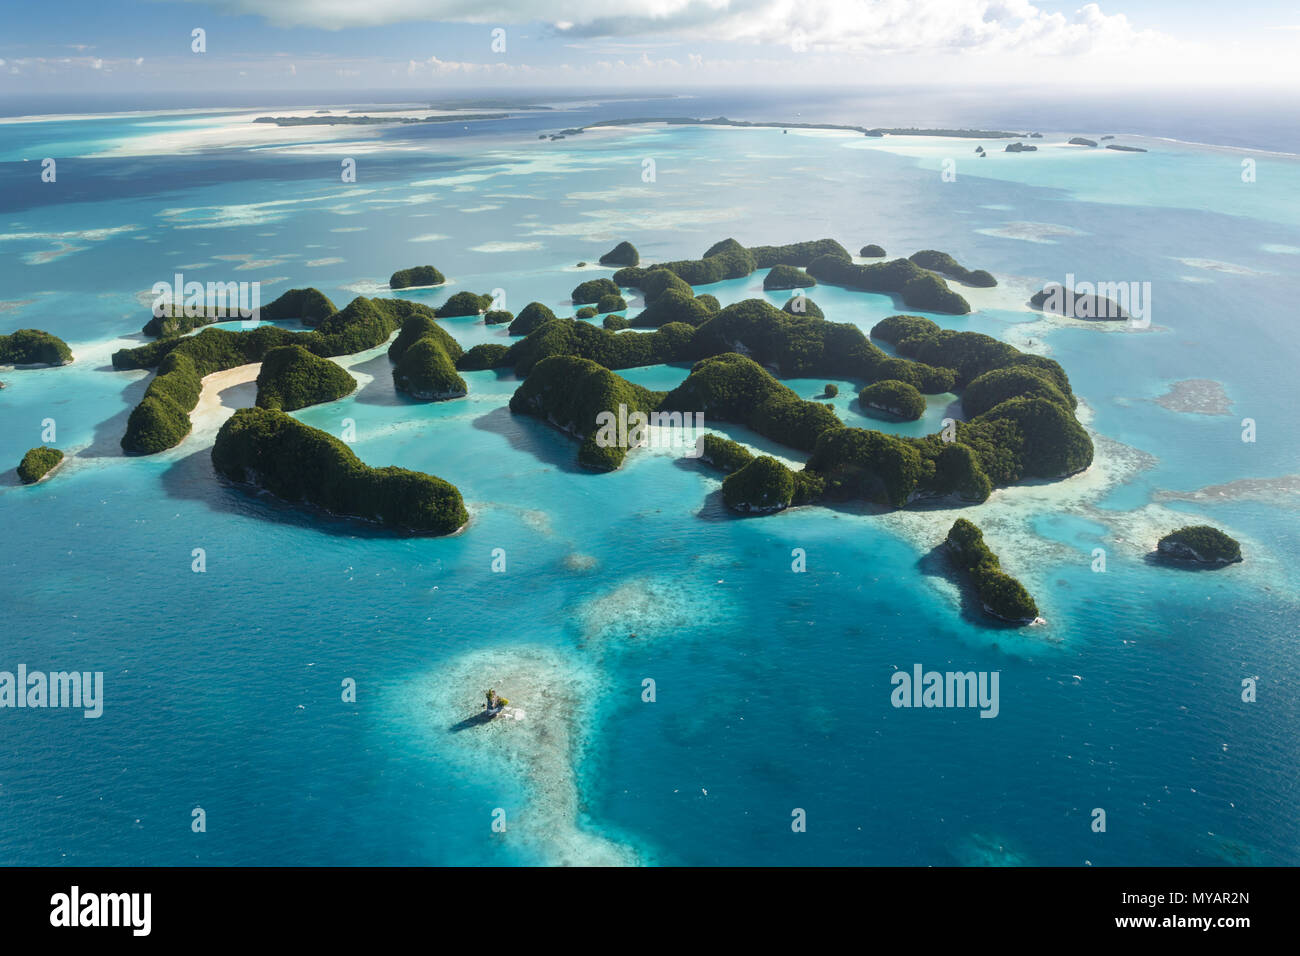 Aus der Vogelperspektive auf eine Ansammlung von Korallenatollen und Inseln, umgeben vom türkisfarbenen Wasser des südpazifiks. 70 Inseln, Felseninseln, tropischer Atoll-Park in Palua. Stockfoto